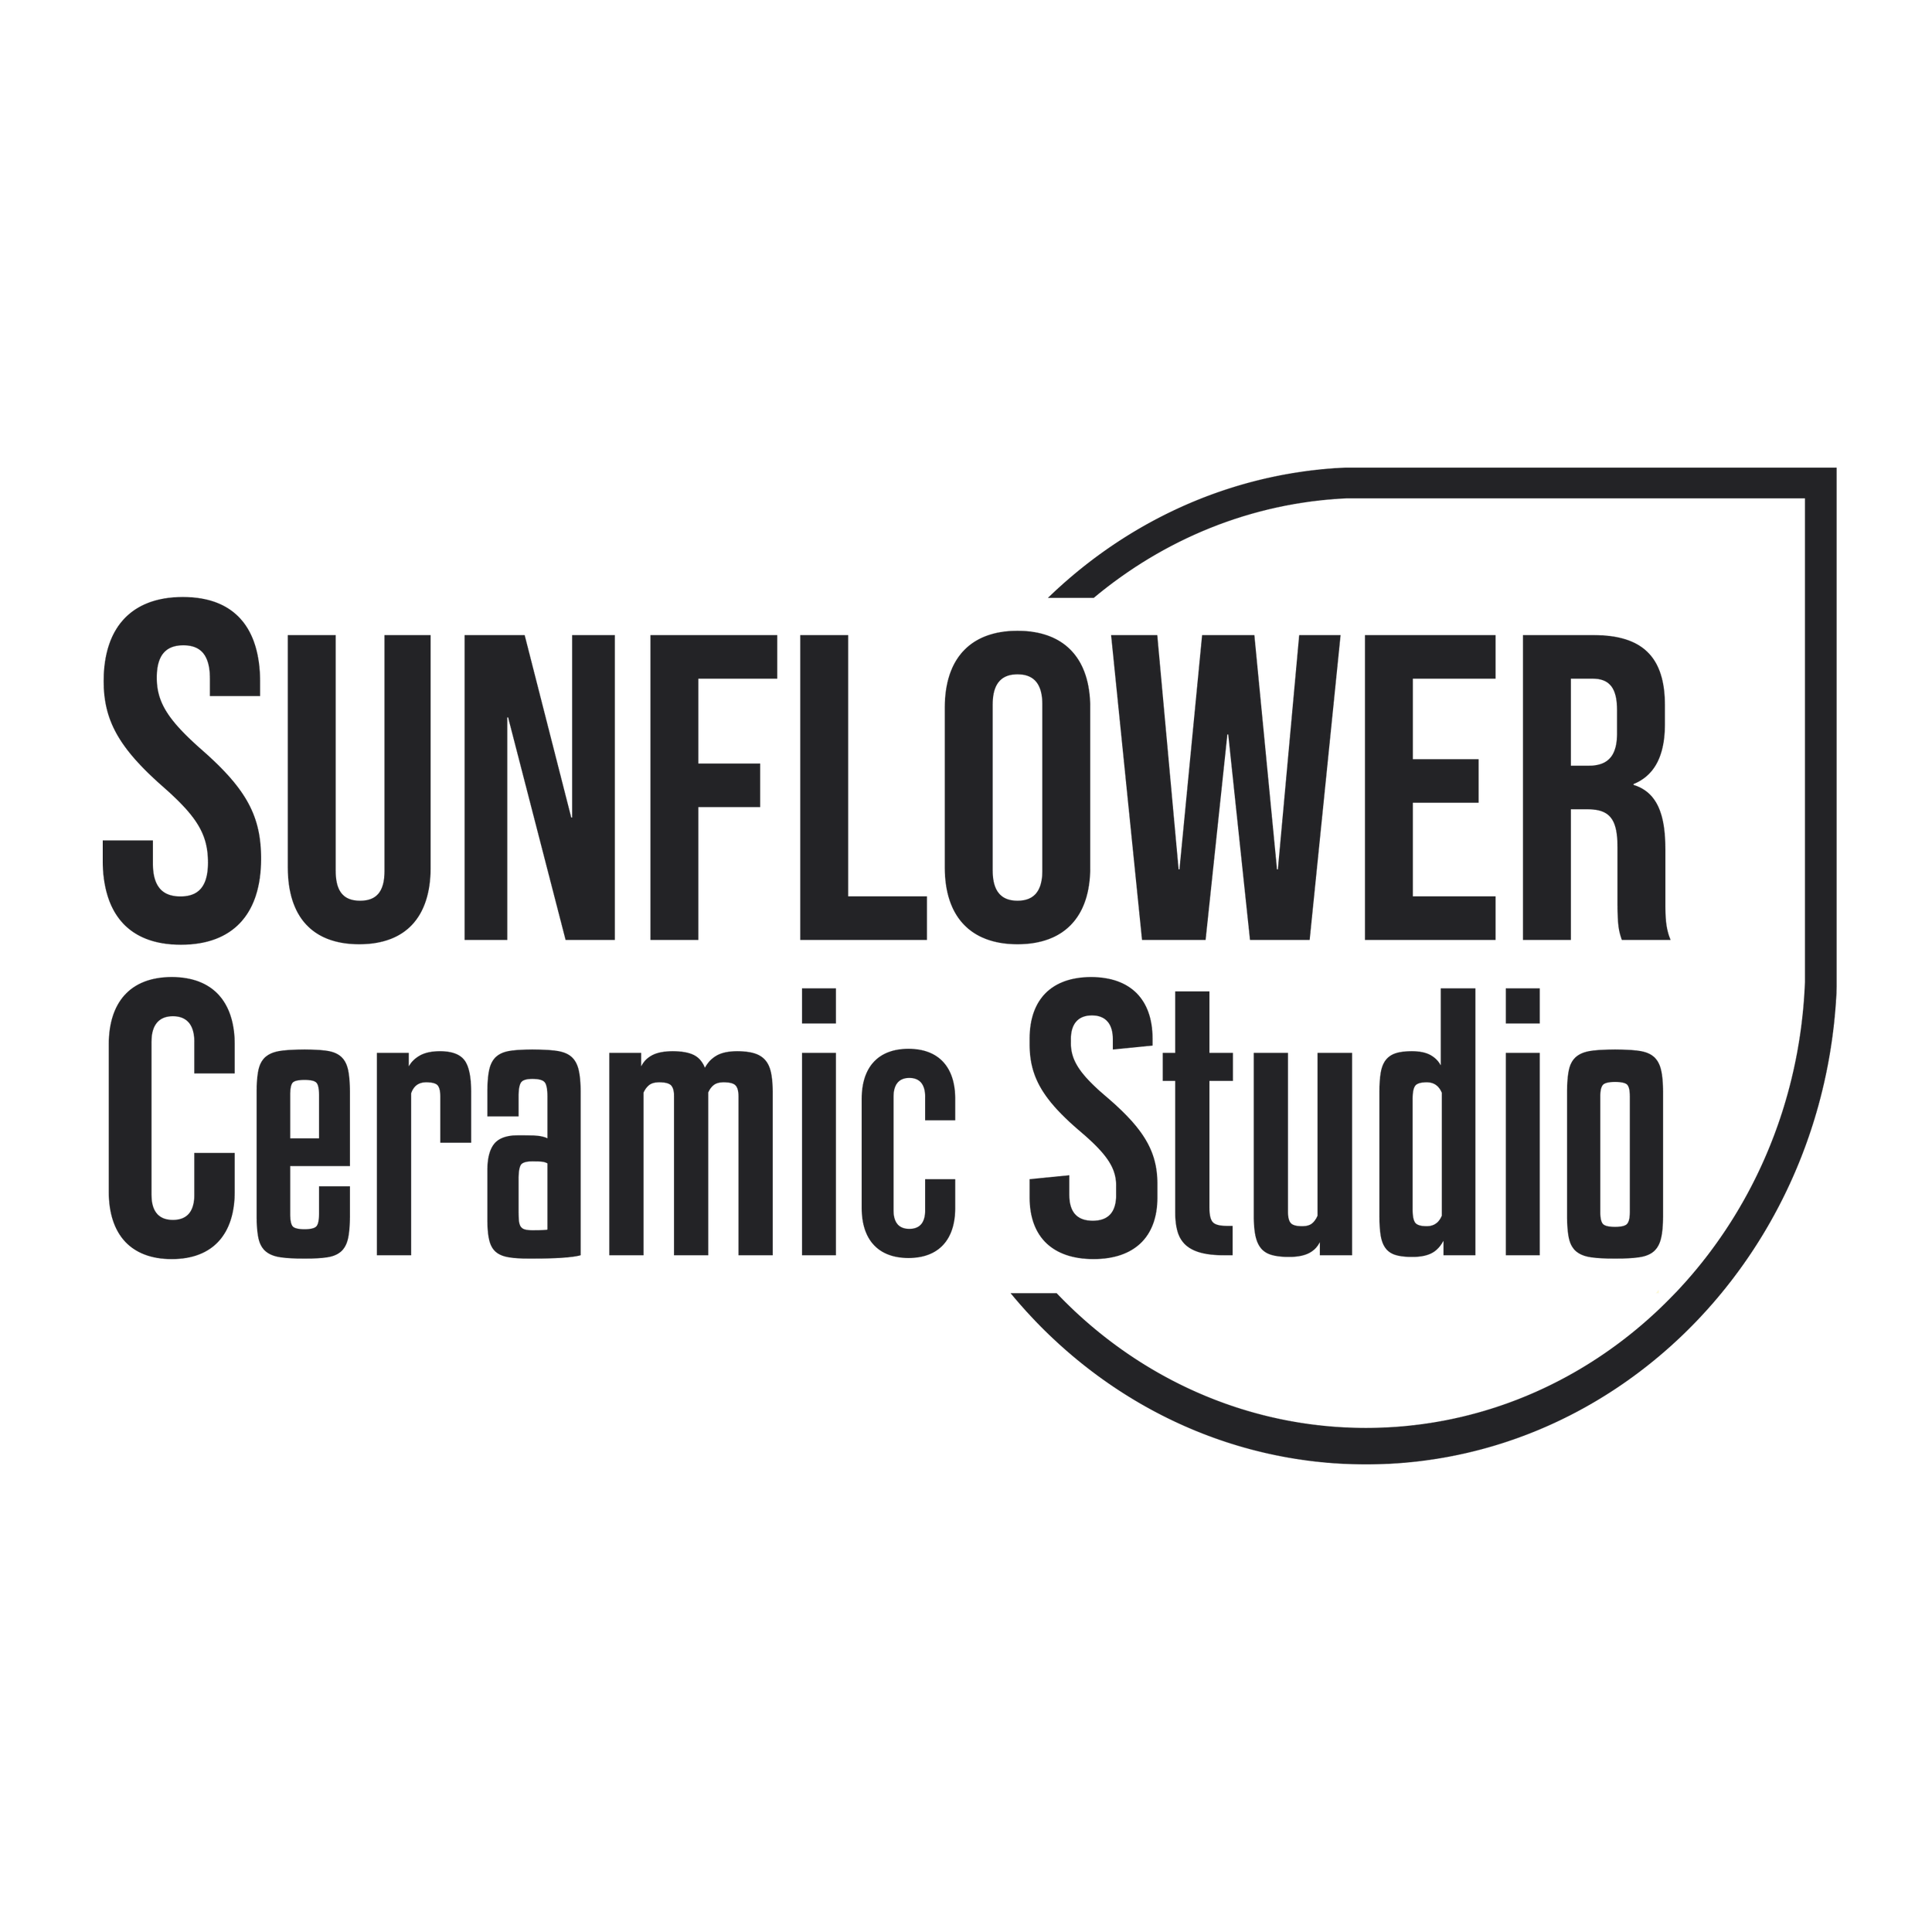 Sunflower Ceramic Studio